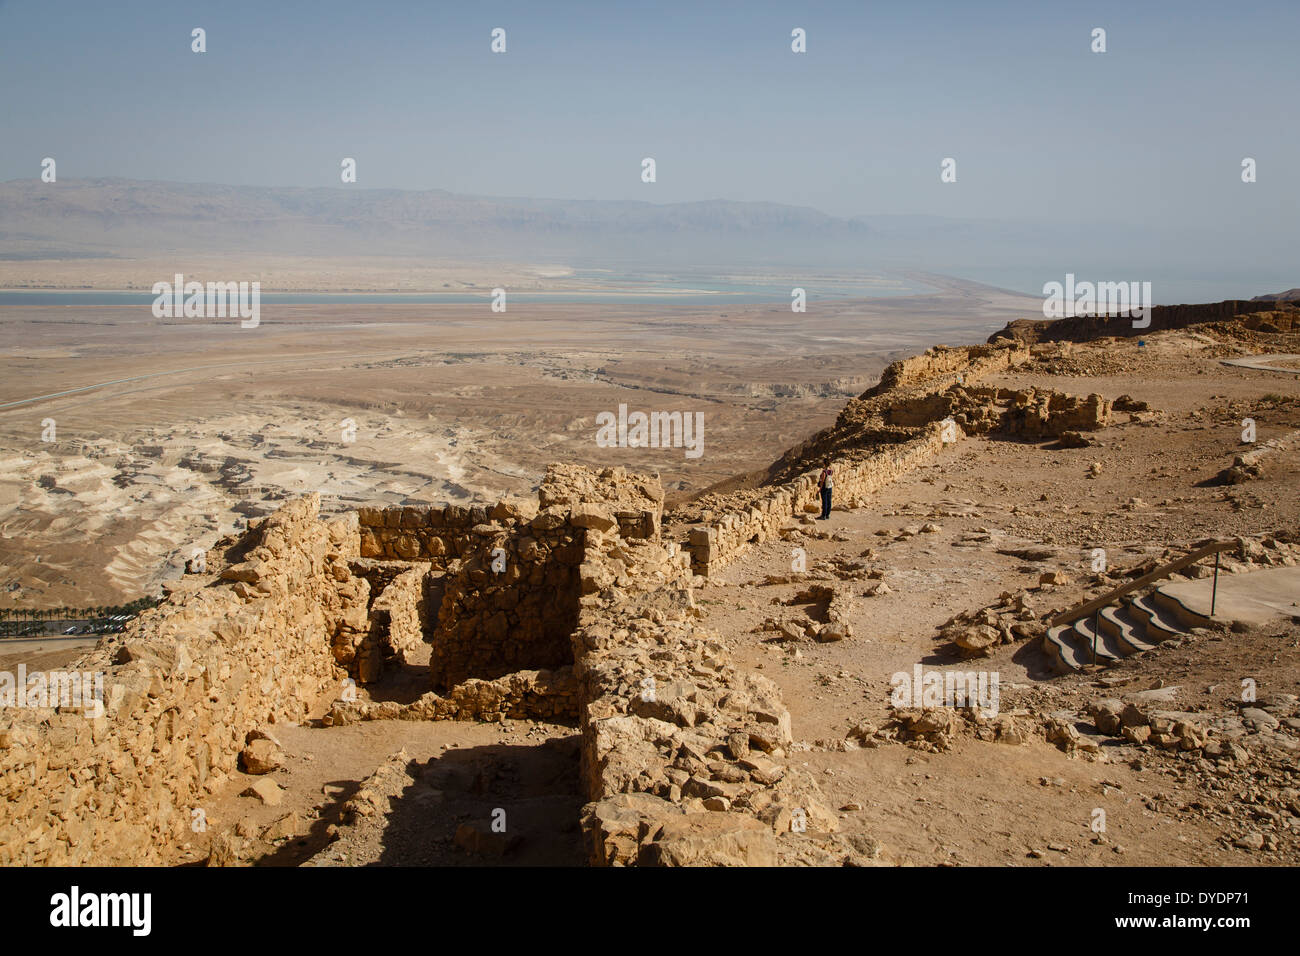 Festung Masada am Rande der Judäischen Wüste, Israel. Stockfoto